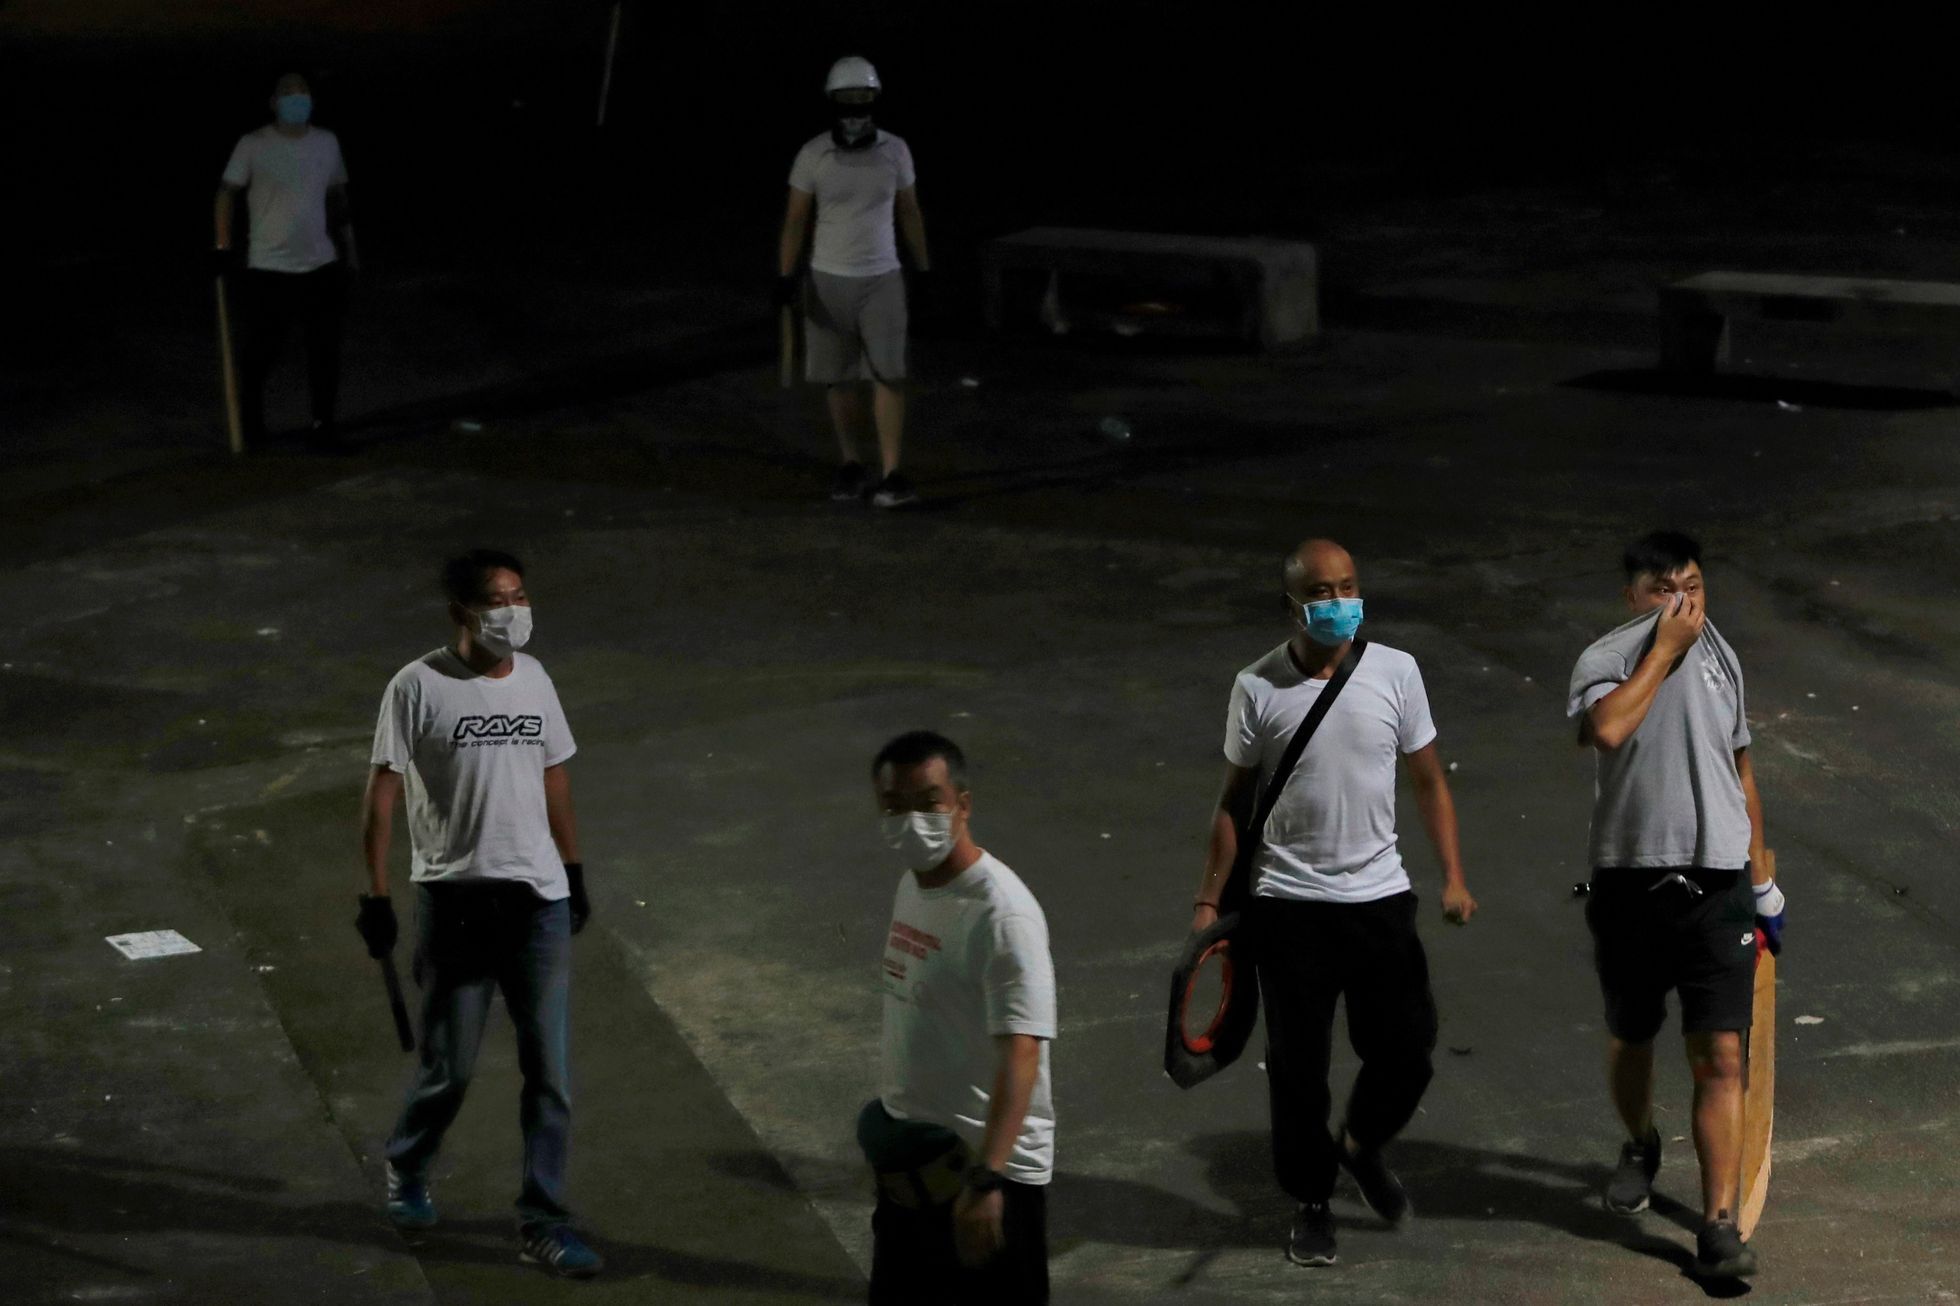 Muži v bílém s obušky, Hong Kong, 21. července 2019